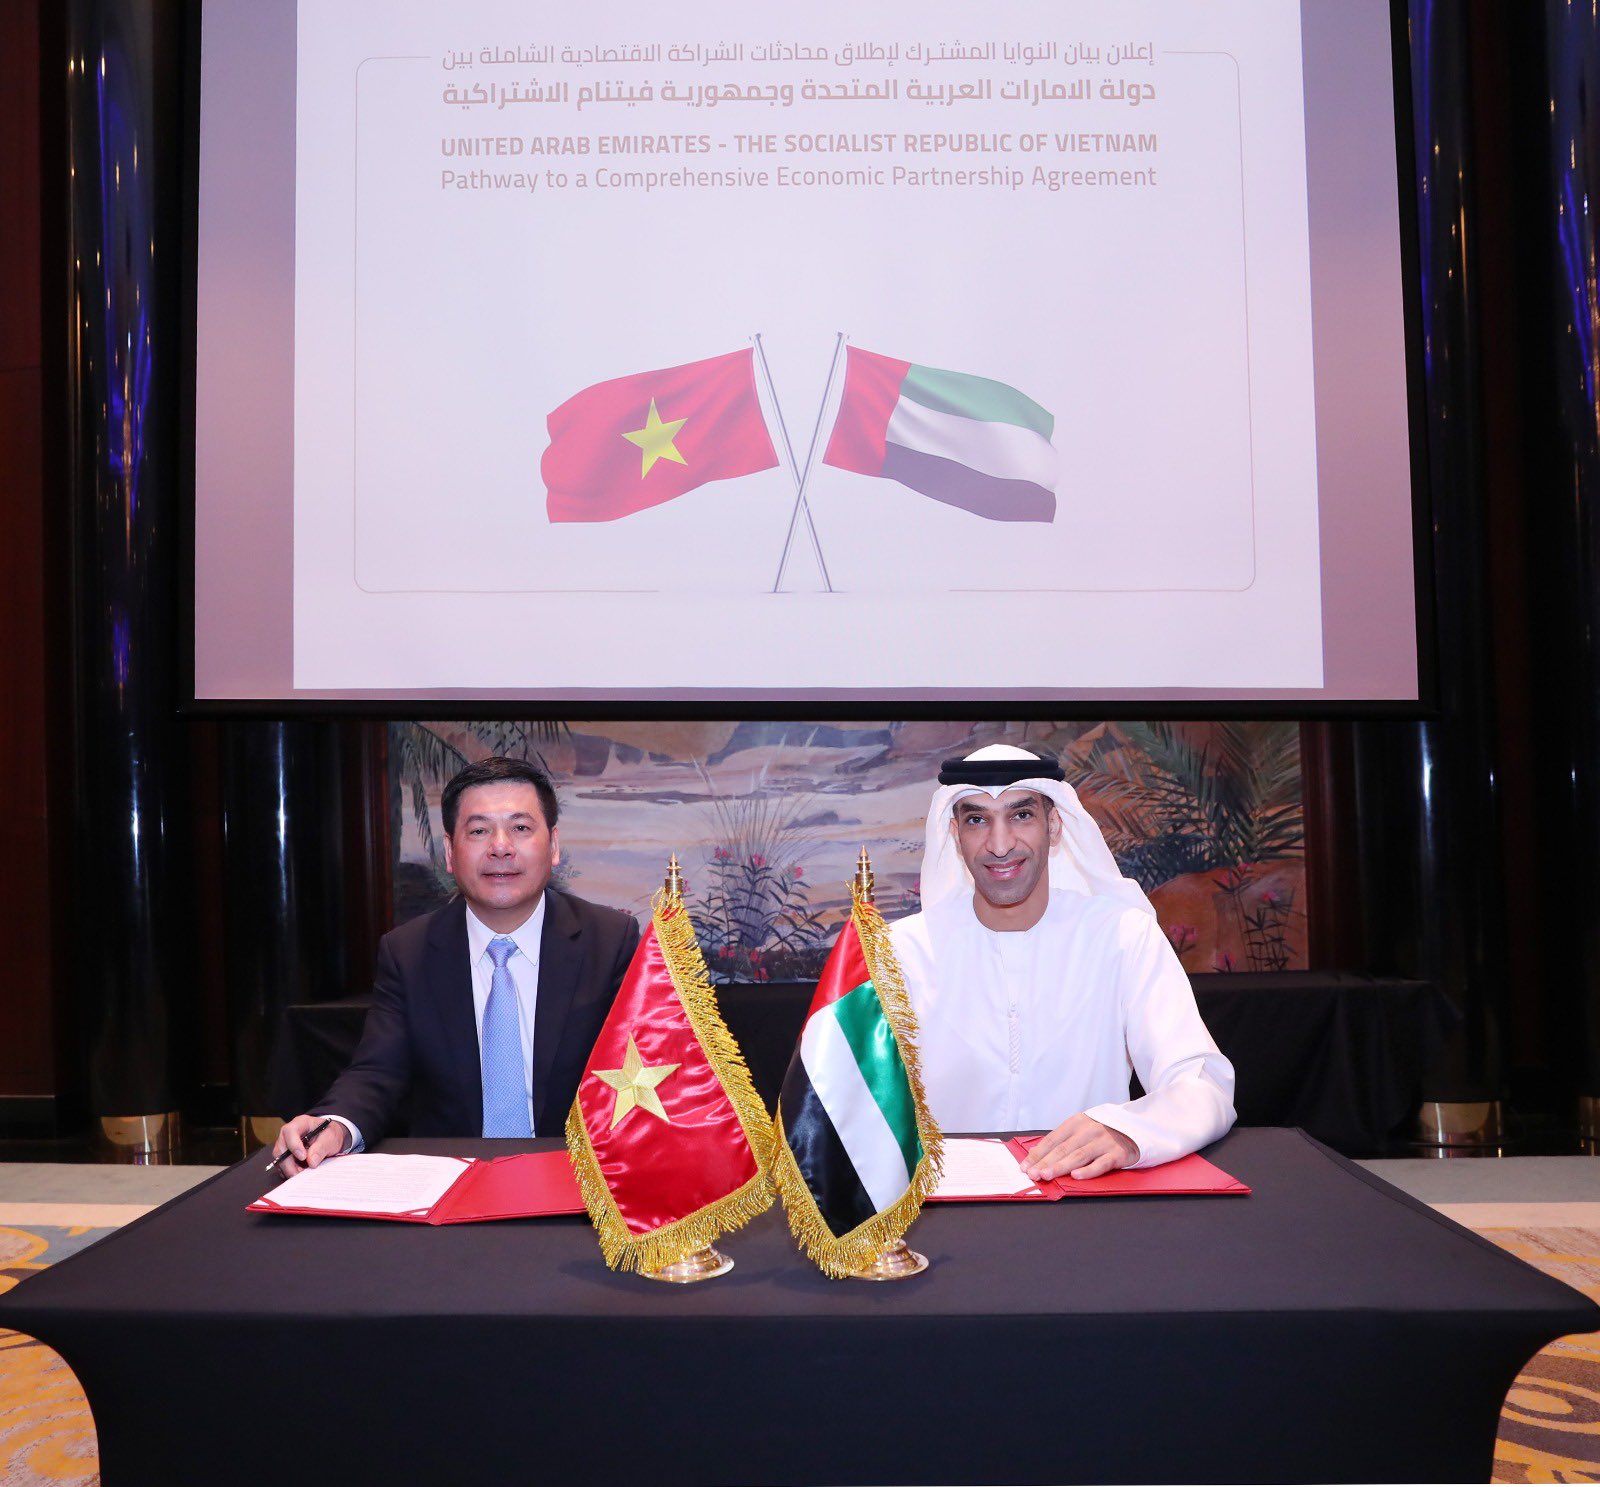 الإمارات تتفق مع فيتنام على إطلاق محادثات للتوصل إلى اتفاقية شراكة اقتصادية شاملة